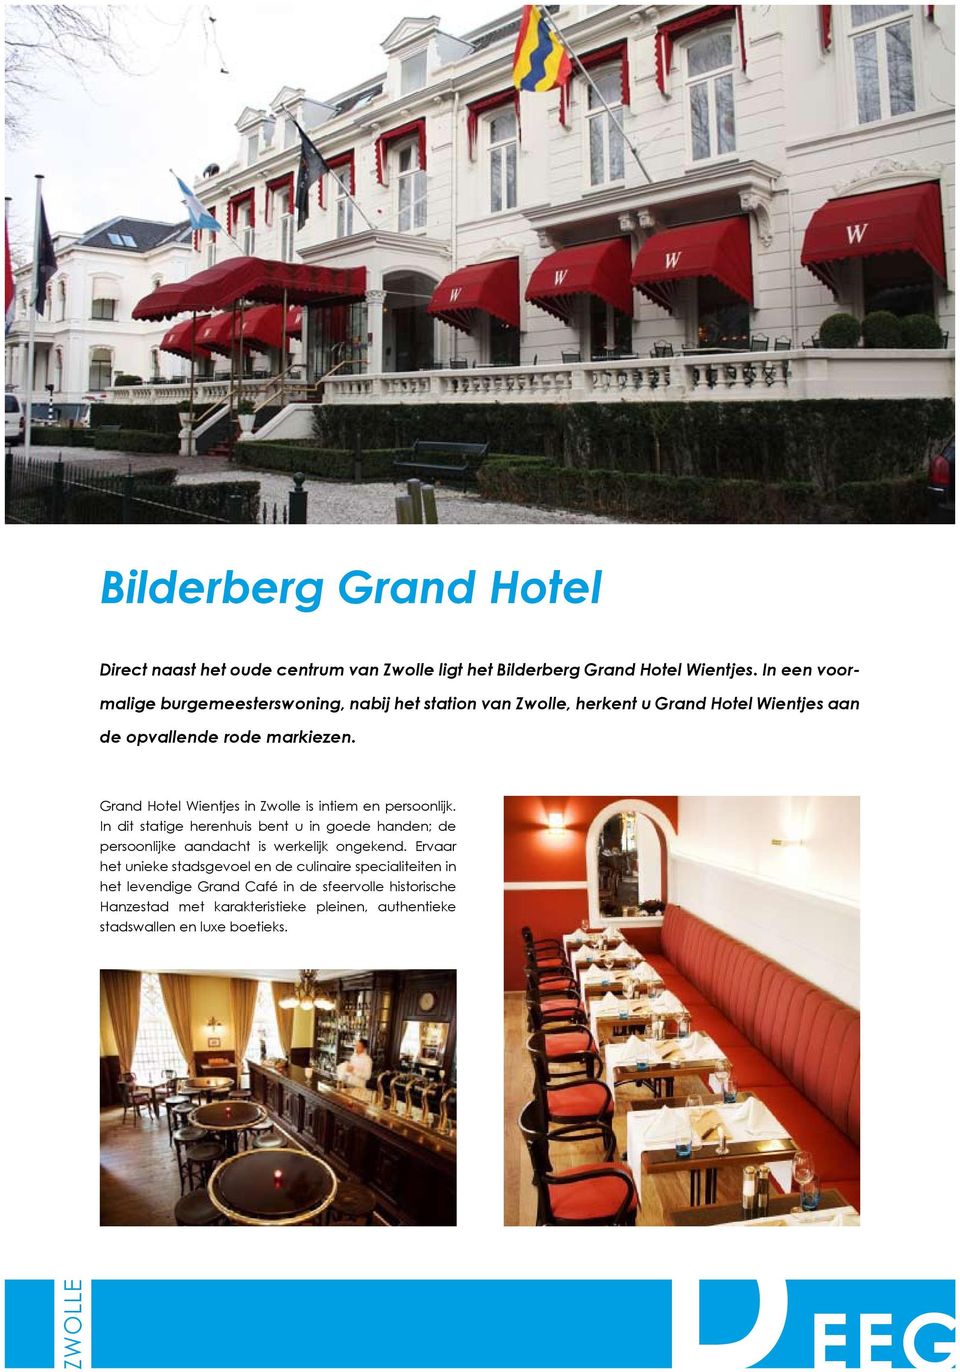 Grand Hotel Wientjes in is intiem en persoonlijk.